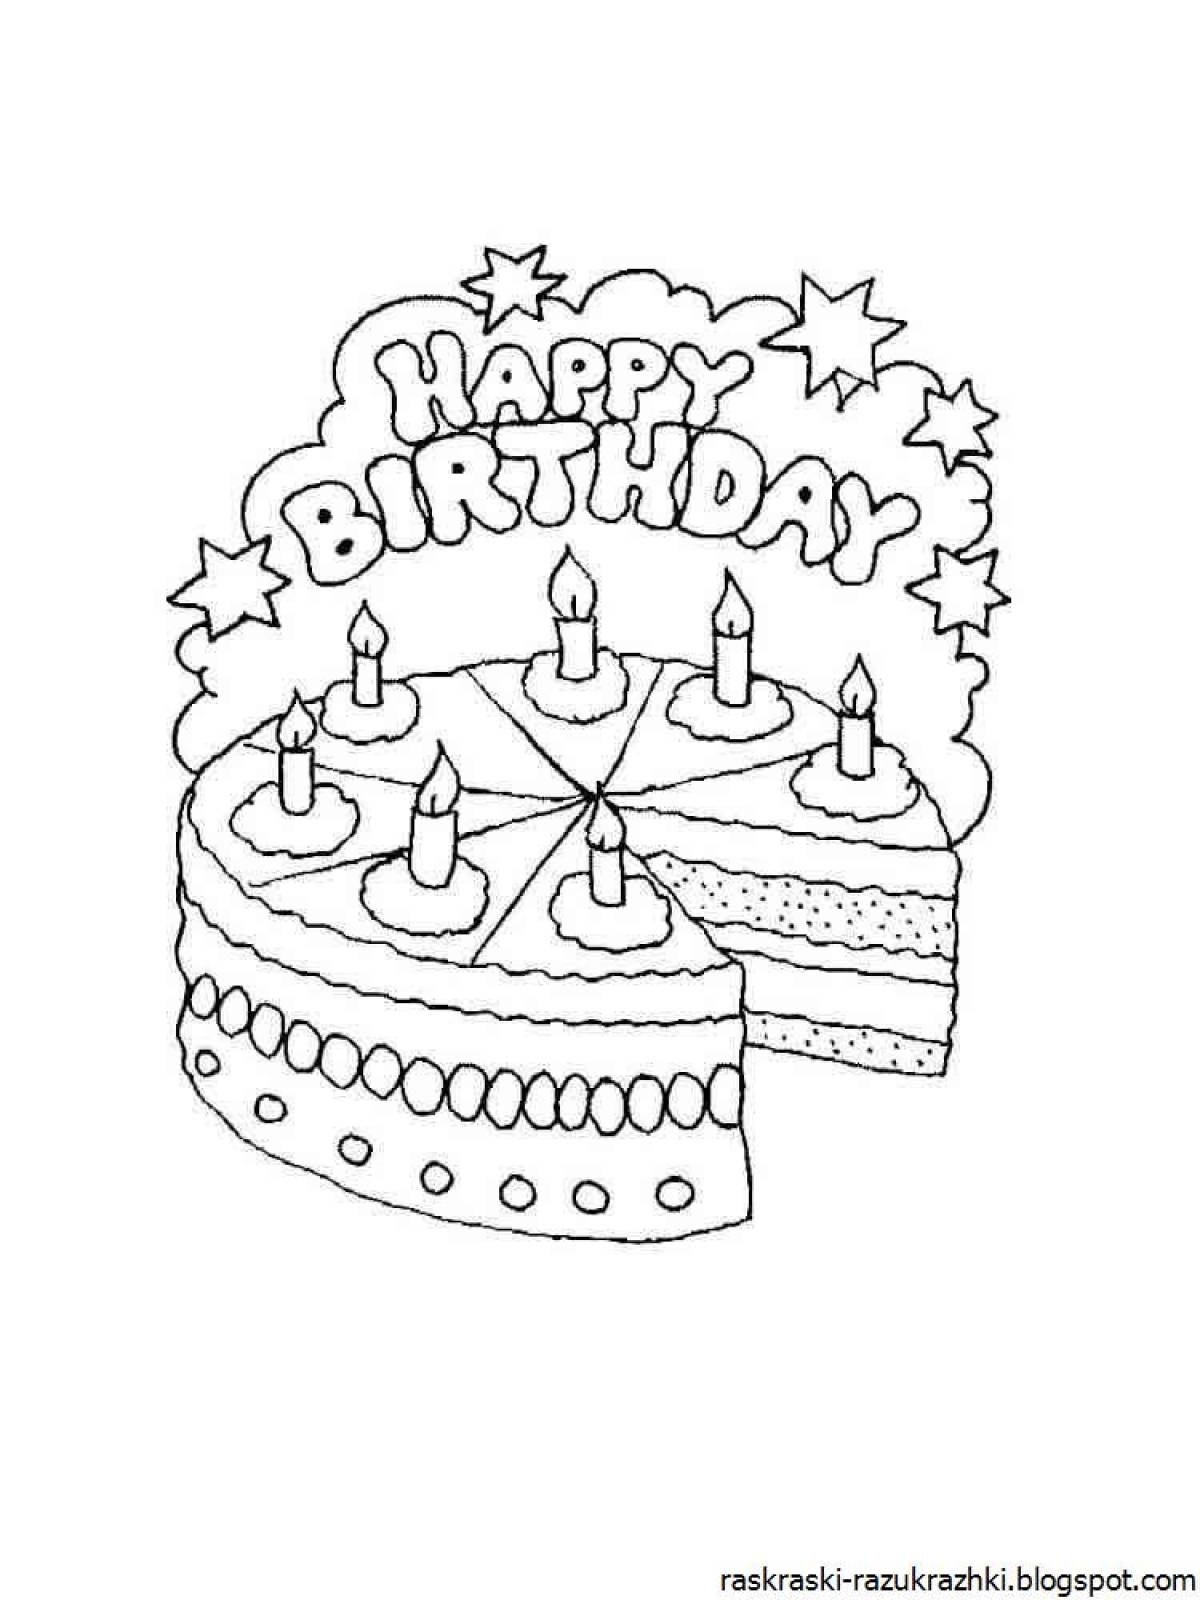 Рисовать рисунки на день рождения. Рисунок на день рождения. Открытка с днём рождения рисунок. Рисунокмна день рождение. Открытка раскраска с днем рождения.